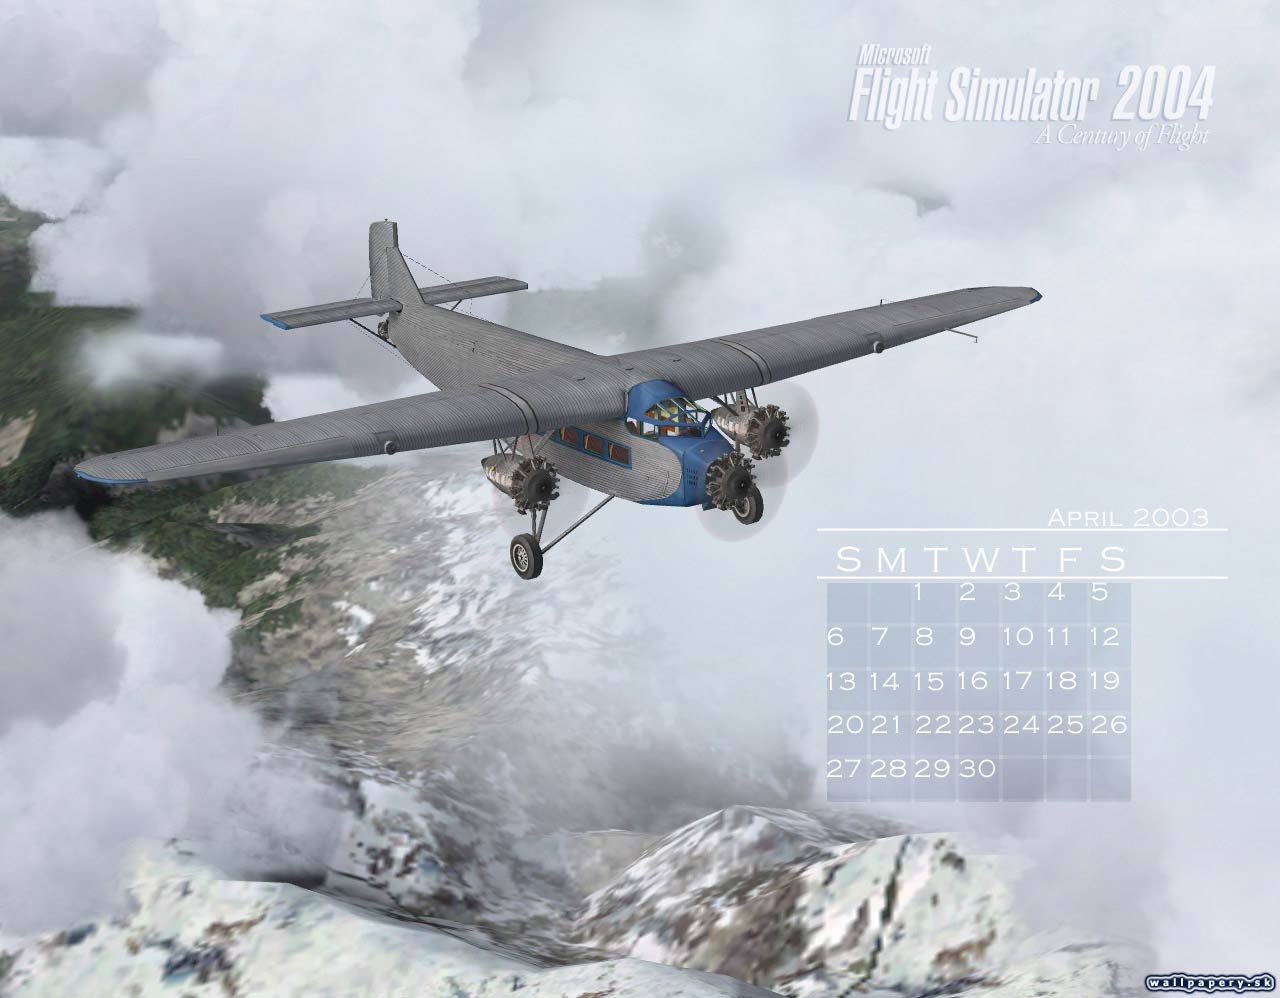 Microsoft Flight Simulator 2004: A Century of Flight - wallpaper 4